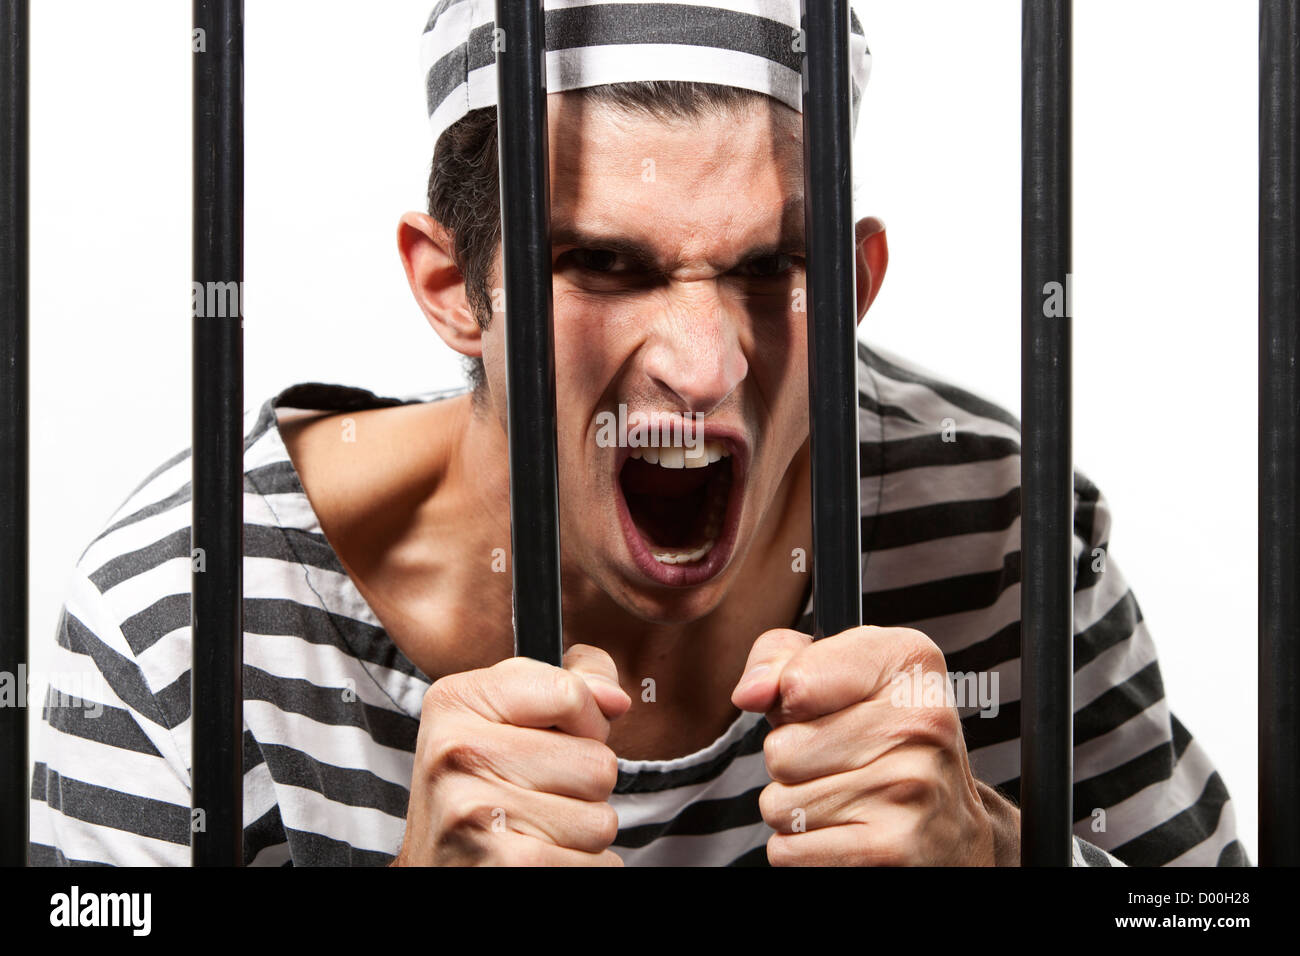 Porta Do Metal Na Prisão Com Um Grande Fechamento E Umas Barras Grossas  Foto de Stock - Imagem de carcereira, quarto: 150830680